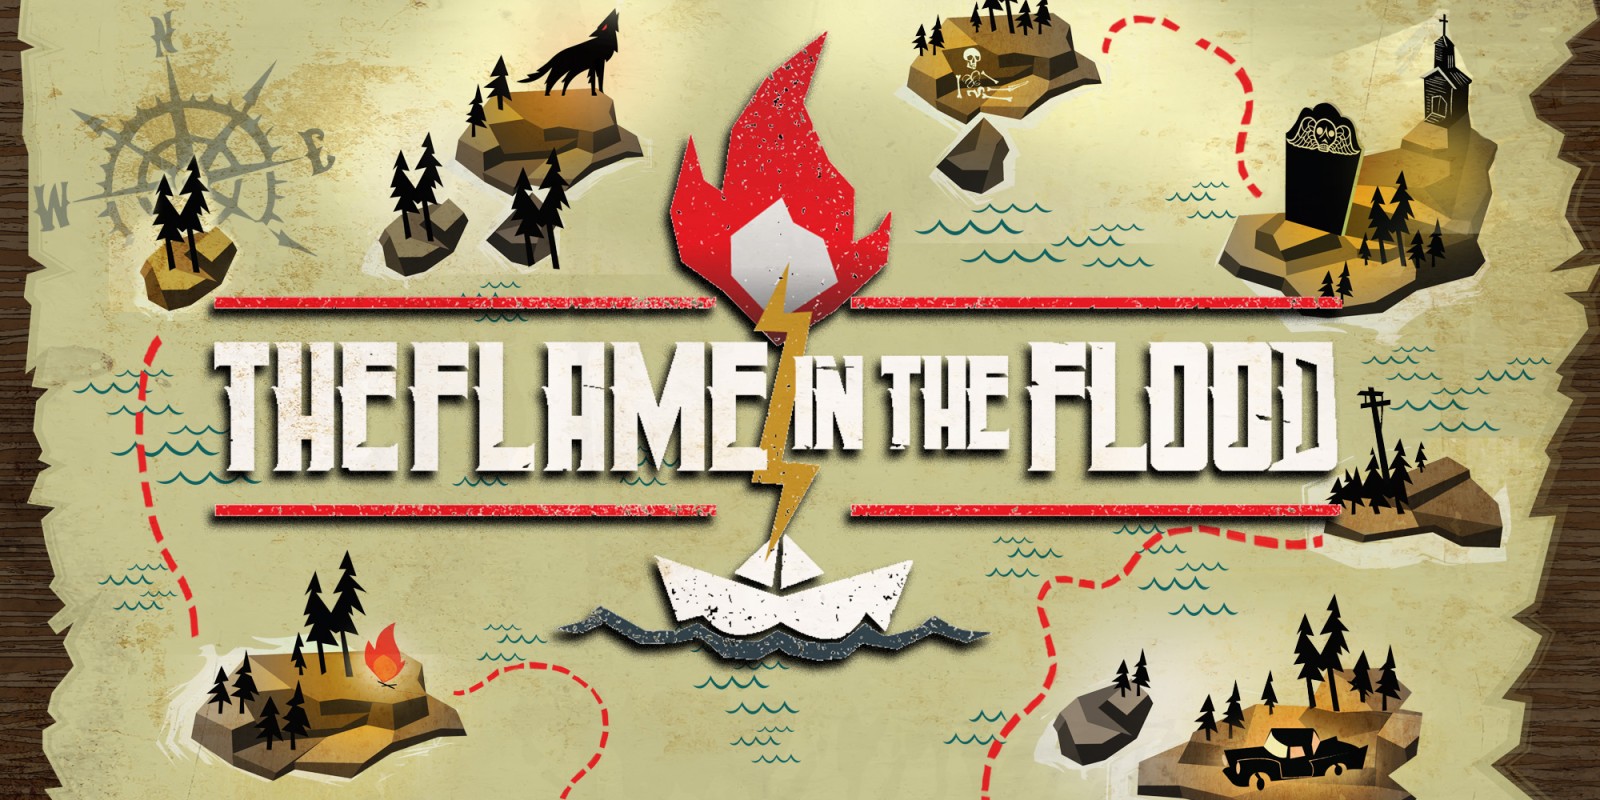 Nhanh tay sở hữu tựa game phiêu lưu The Flame In The Flood đang miễn phí trong thời gian giới hạn